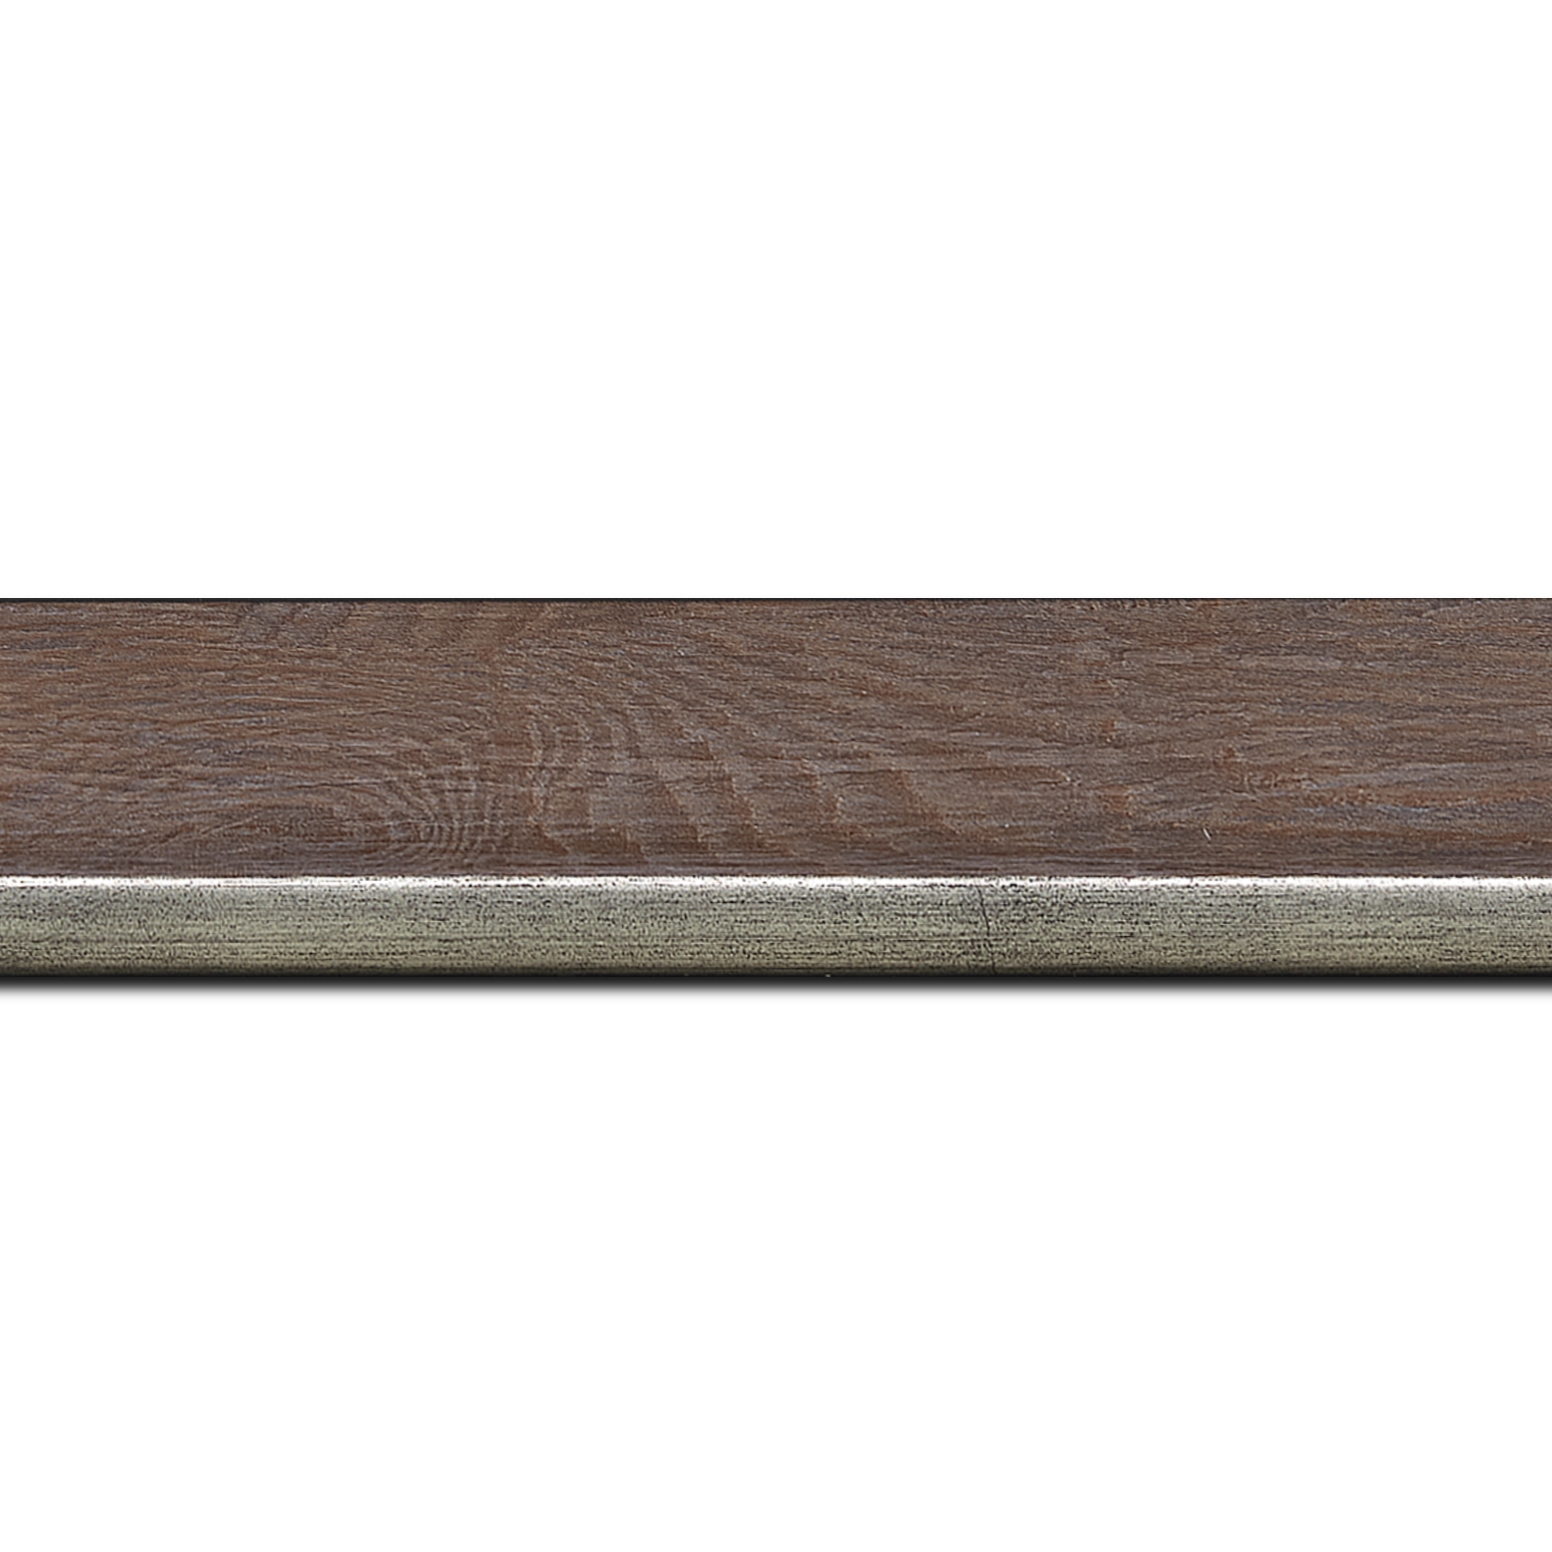 Baguette longueur 1.40m bois profil plat en pente largeur 3.5cm de couleur ton bois veiné teinté marron clair filet argent chaud